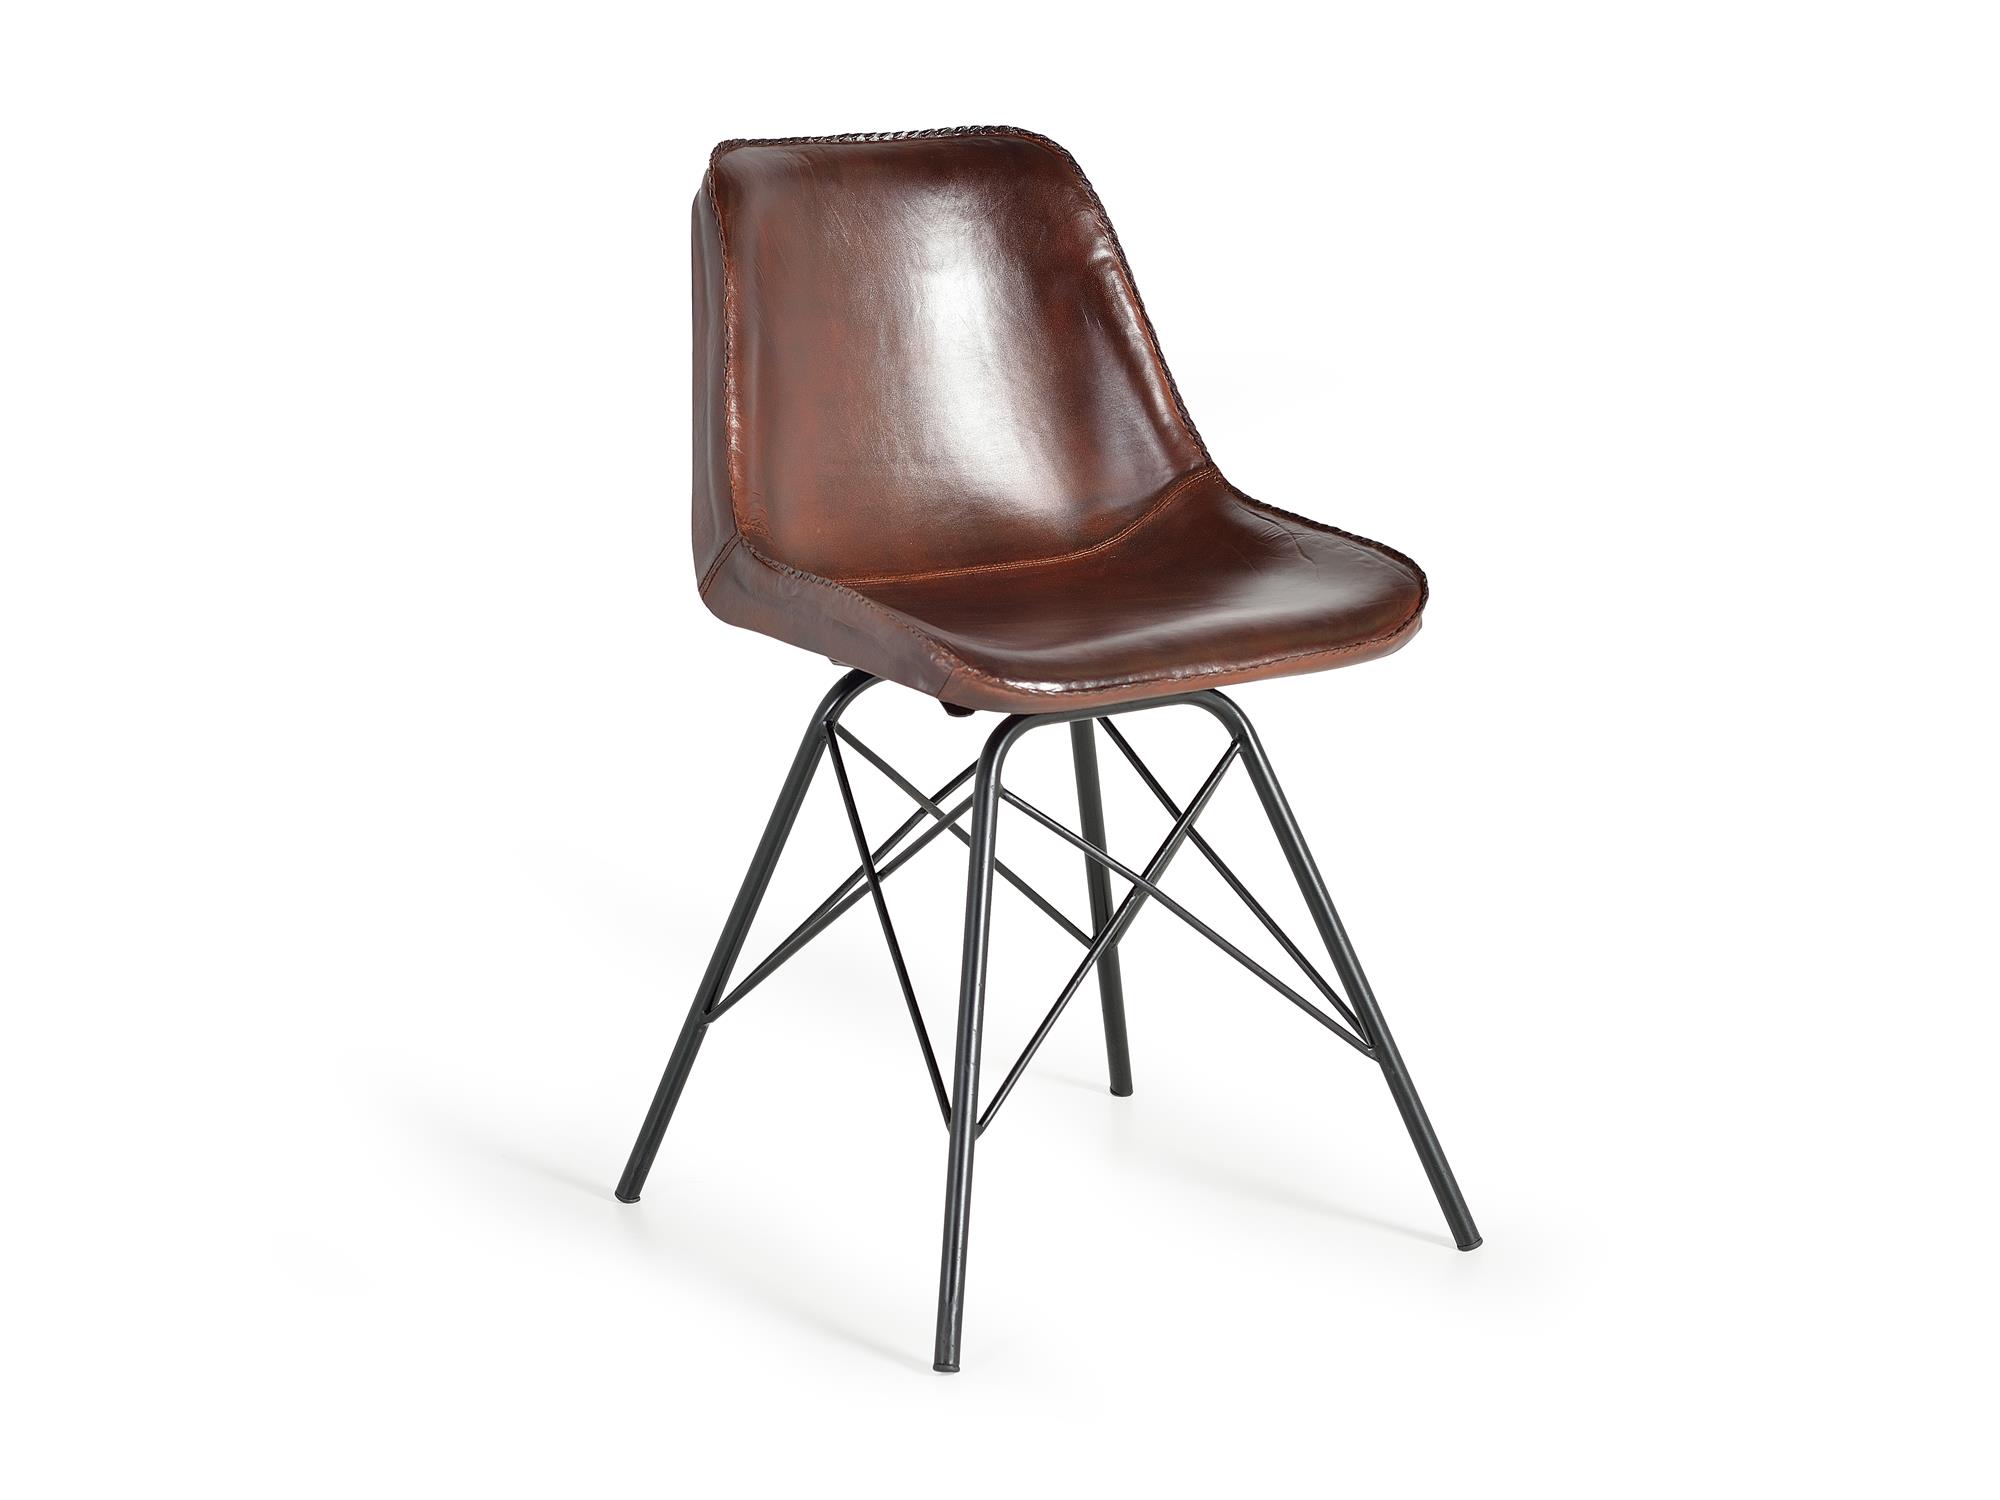 Chaise de style industriel recouverte de cuir naturel.